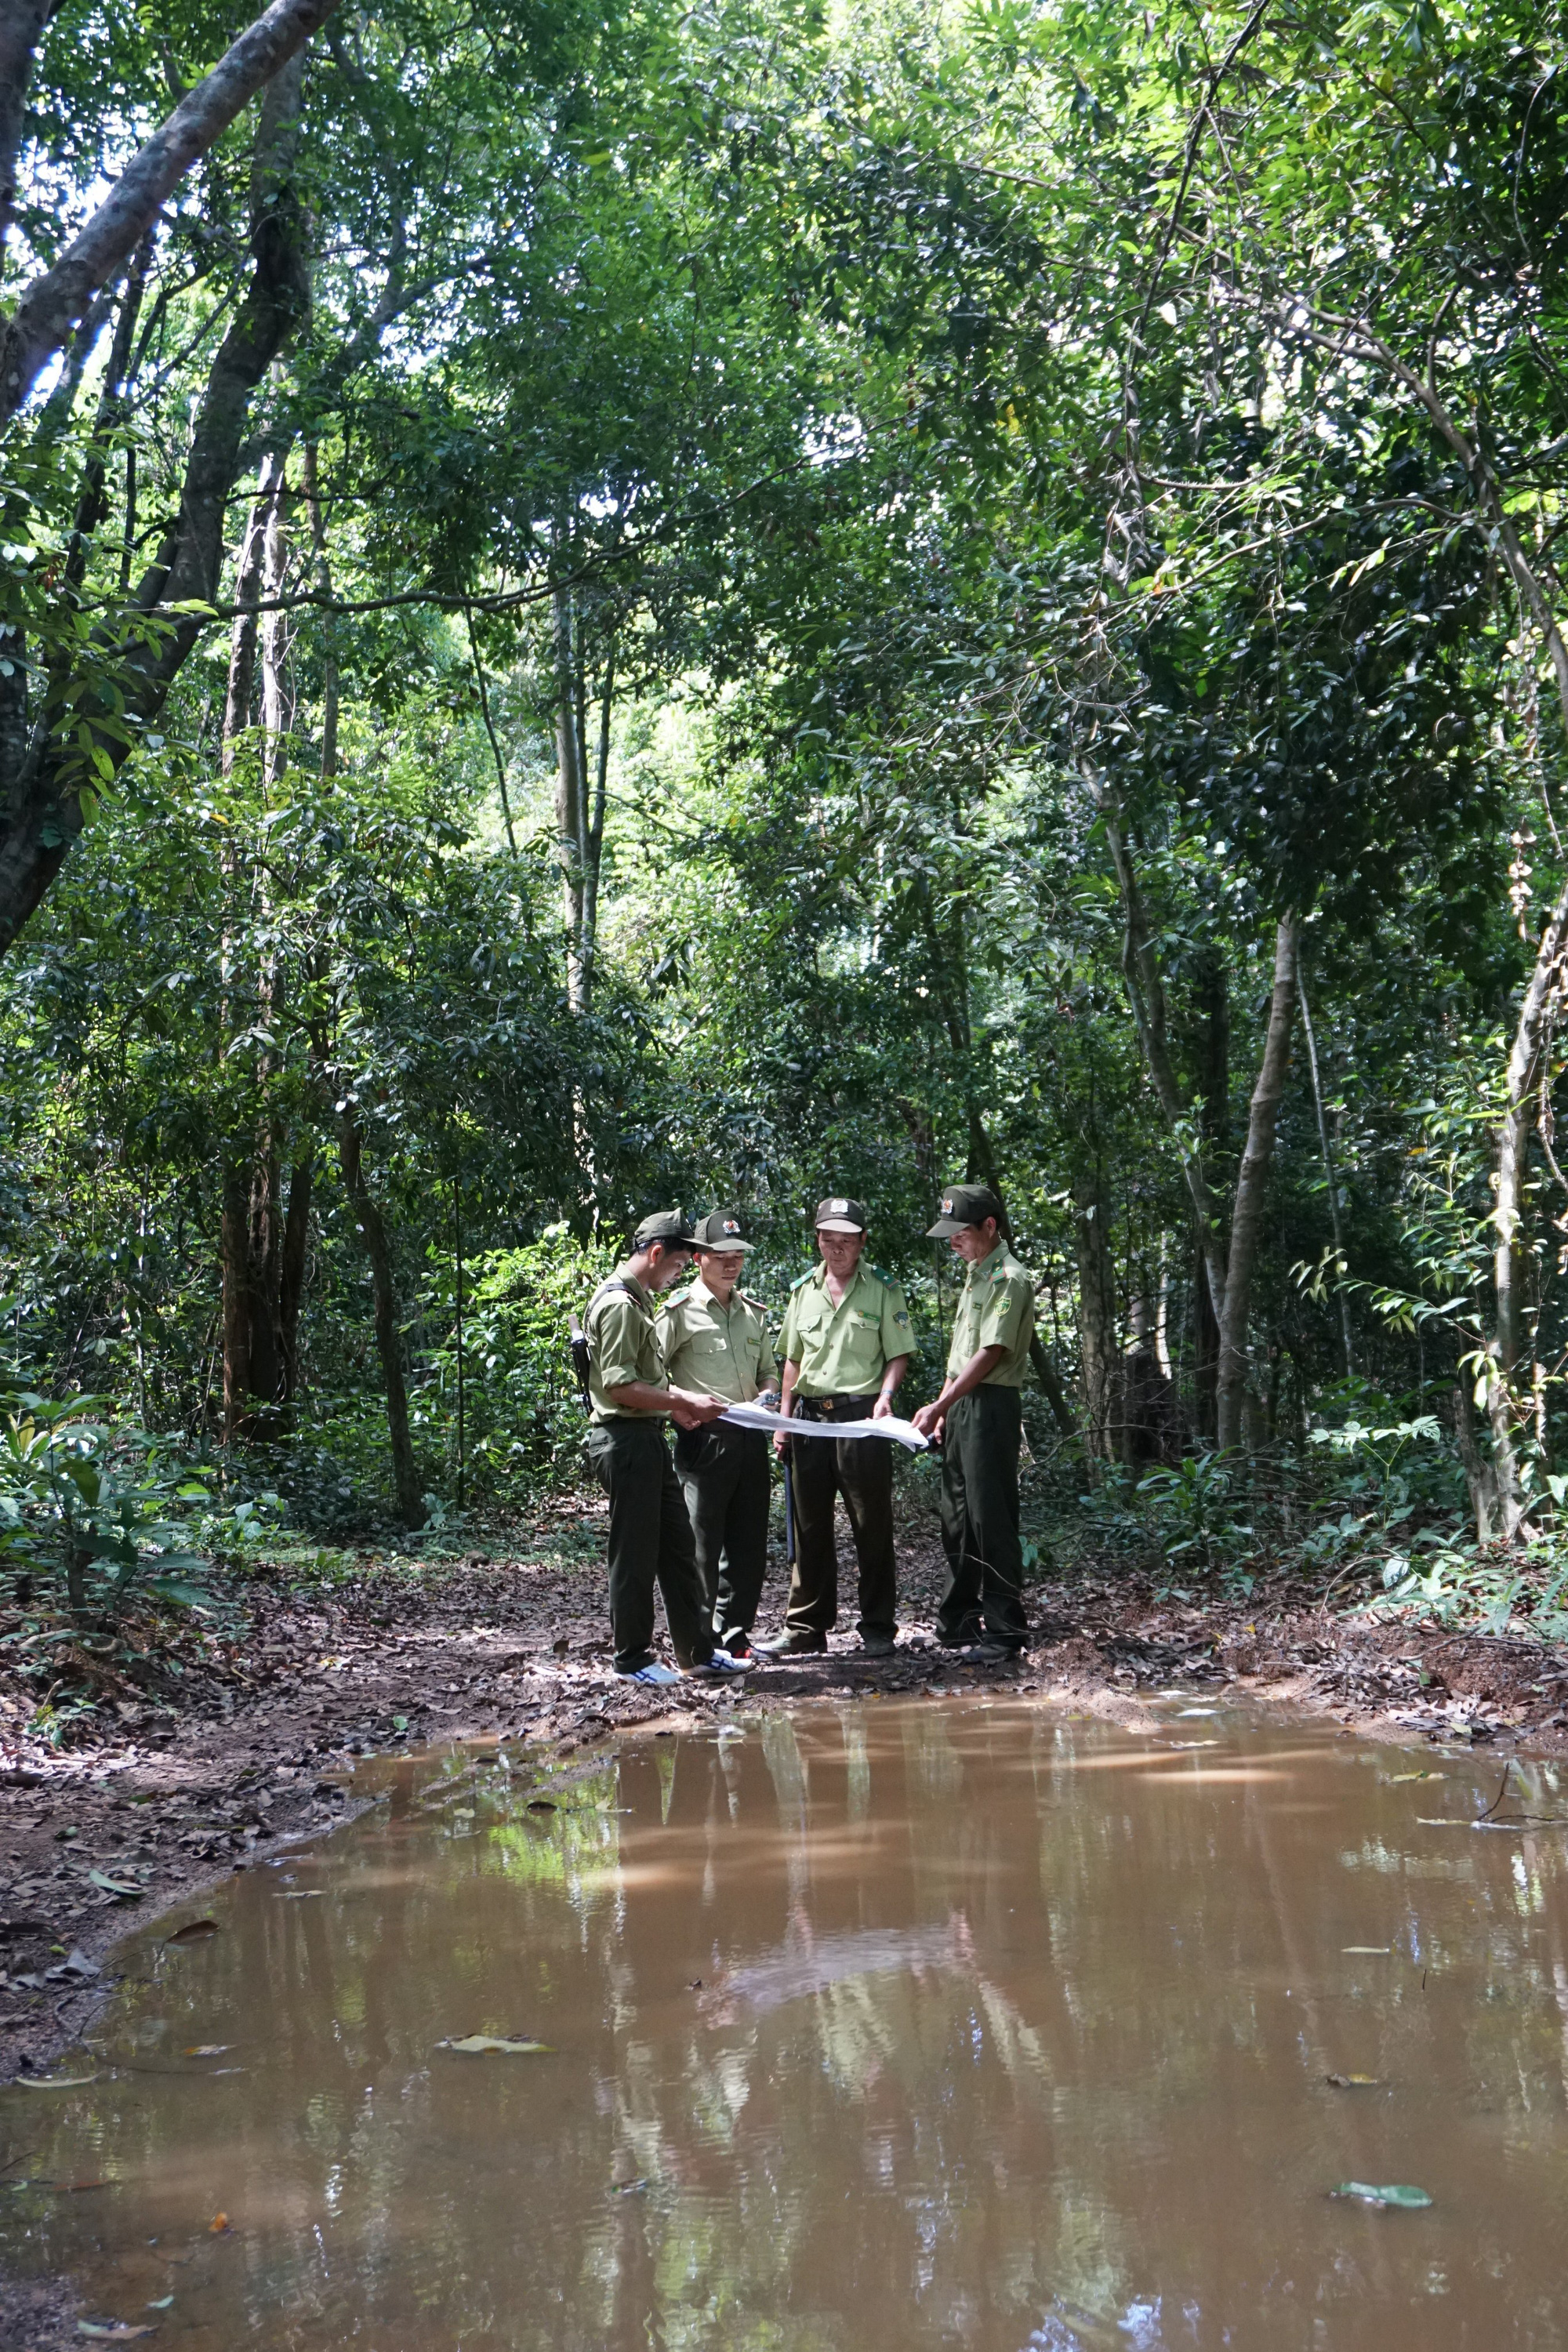 Đồng Nai là một trong những vùng đất được bảo tồn thiên nhiên tốt nhất của Việt Nam, với rất nhiều loài động vật hiếm và đa dạng. Từ rừng ngập mặn đến những khu rừng trên đồi, Đồng Nai sẽ đem lại cho bạn cảm giác yên bình nhất.